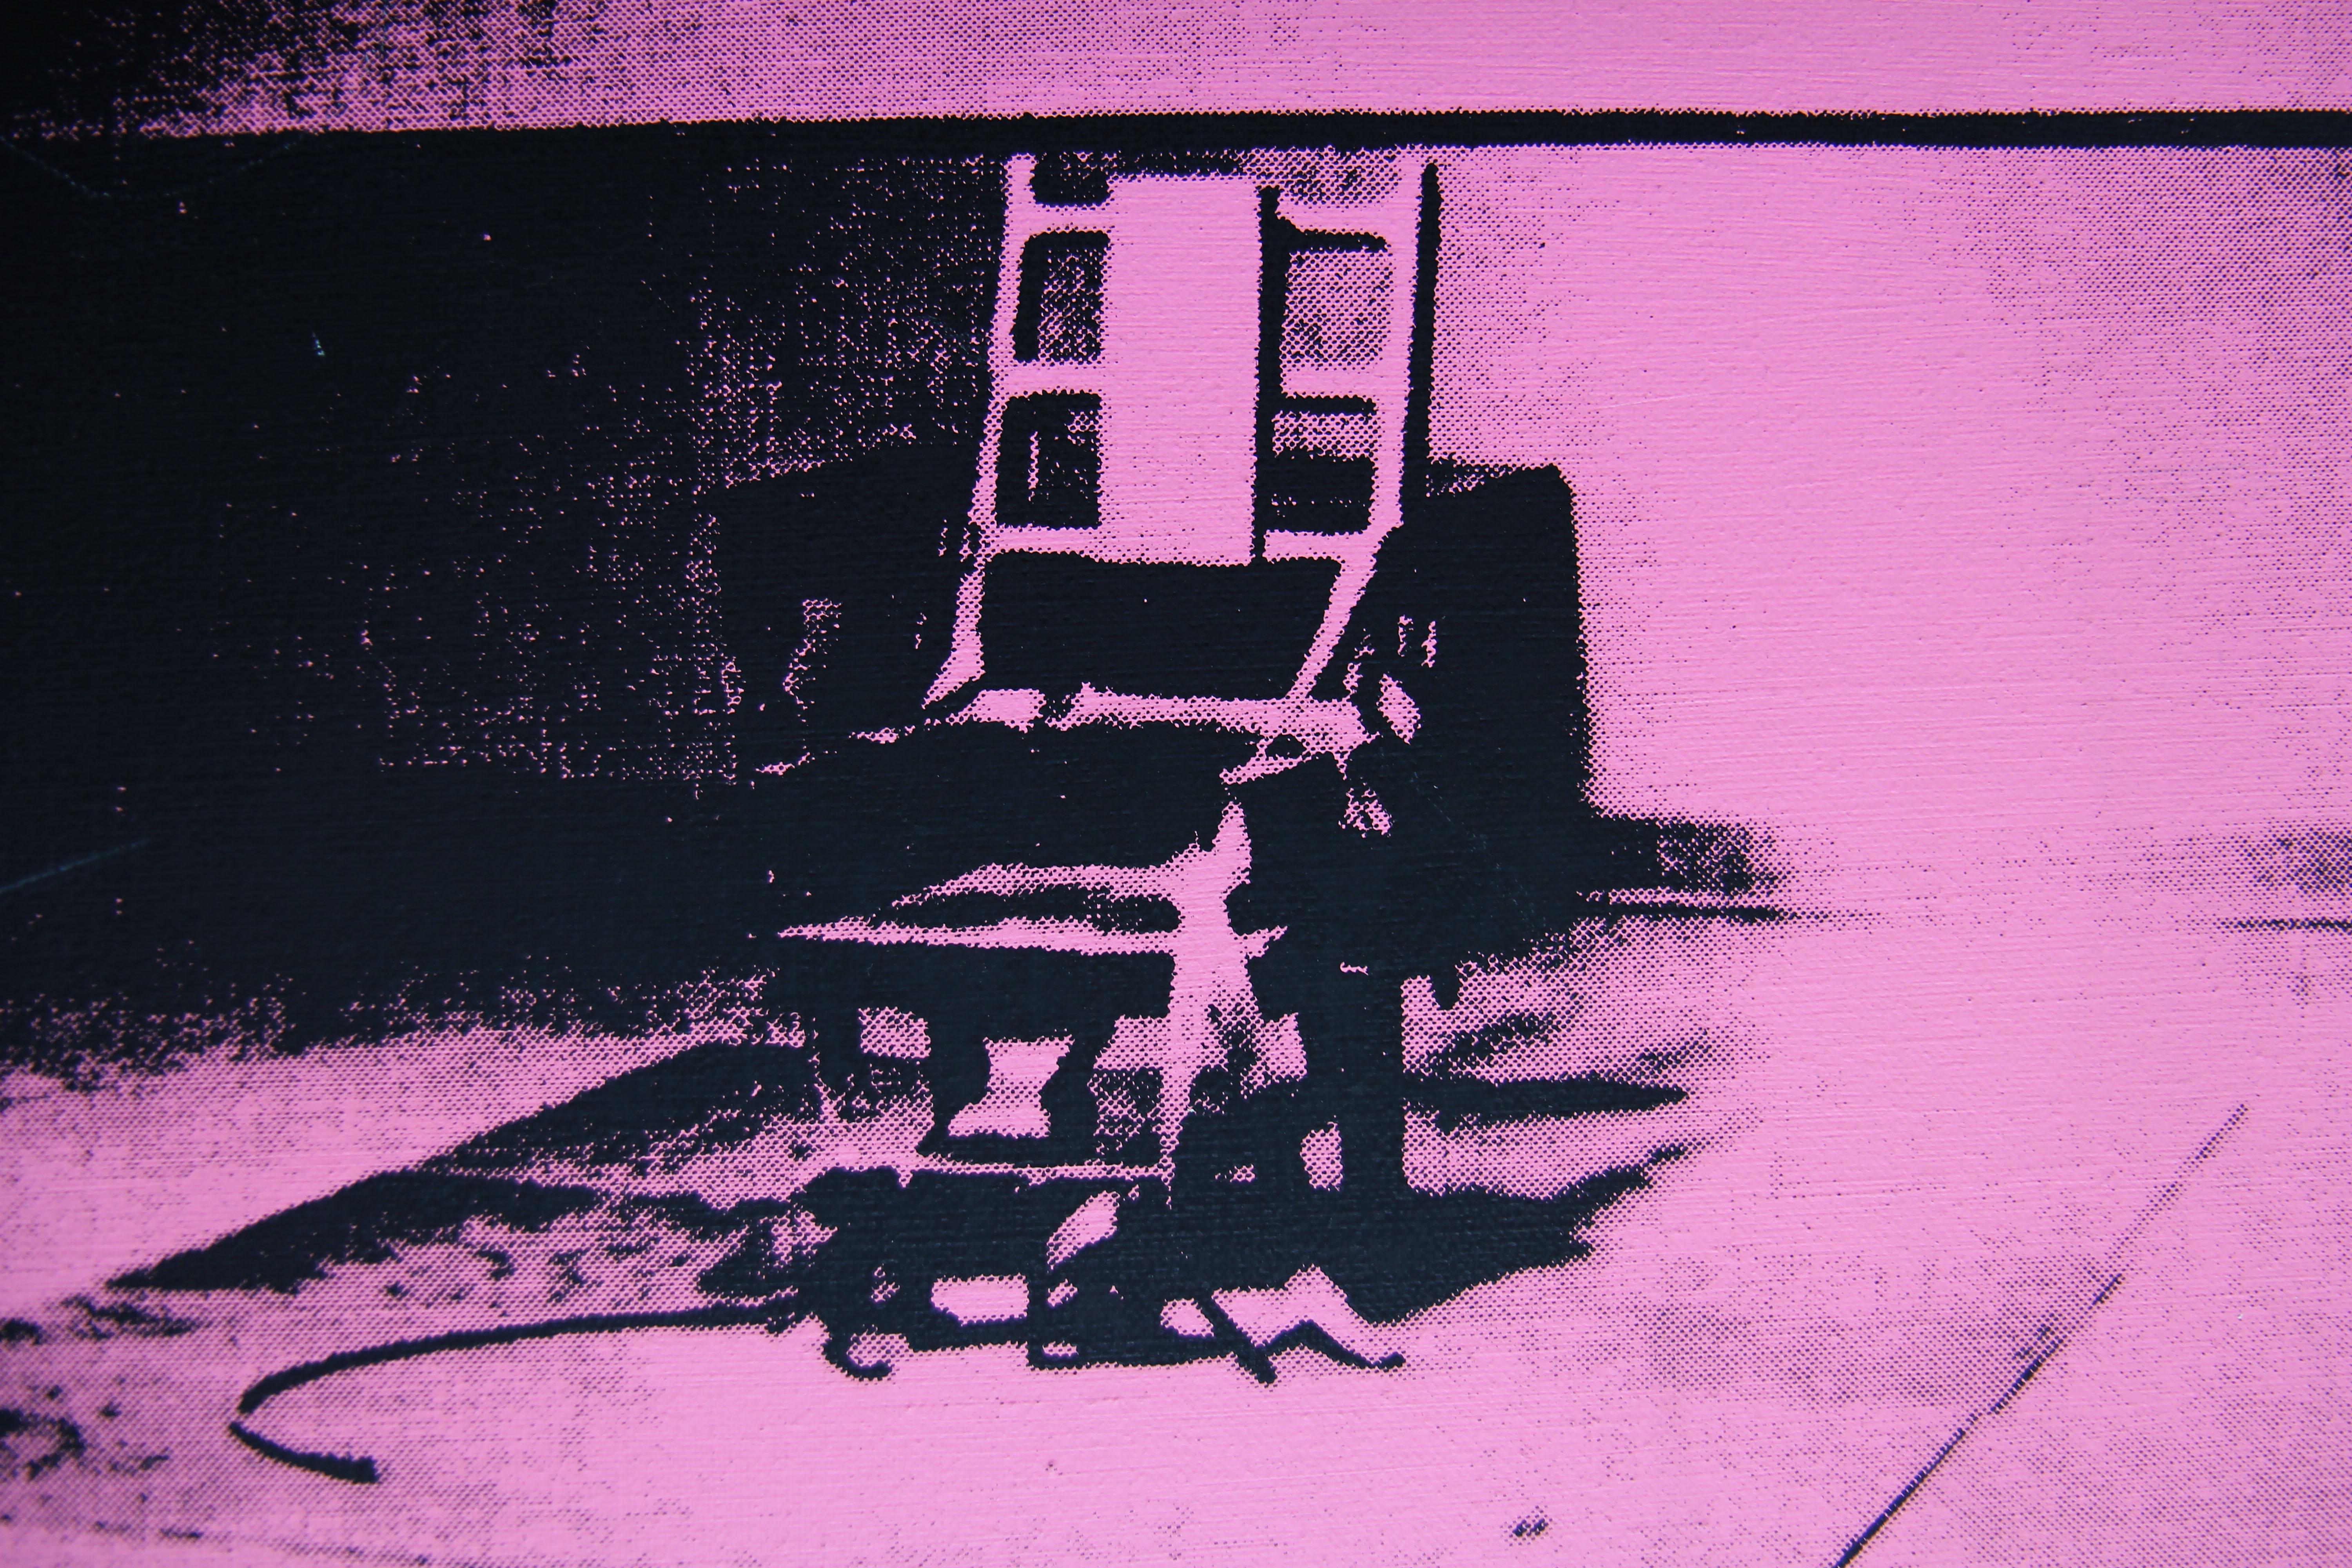 Verweigerte Warhol Rosa elektrischer Stuhl Gemälde von Charles Lutz
Siebdruck und Acryl auf Leinen mit dem Stempel 